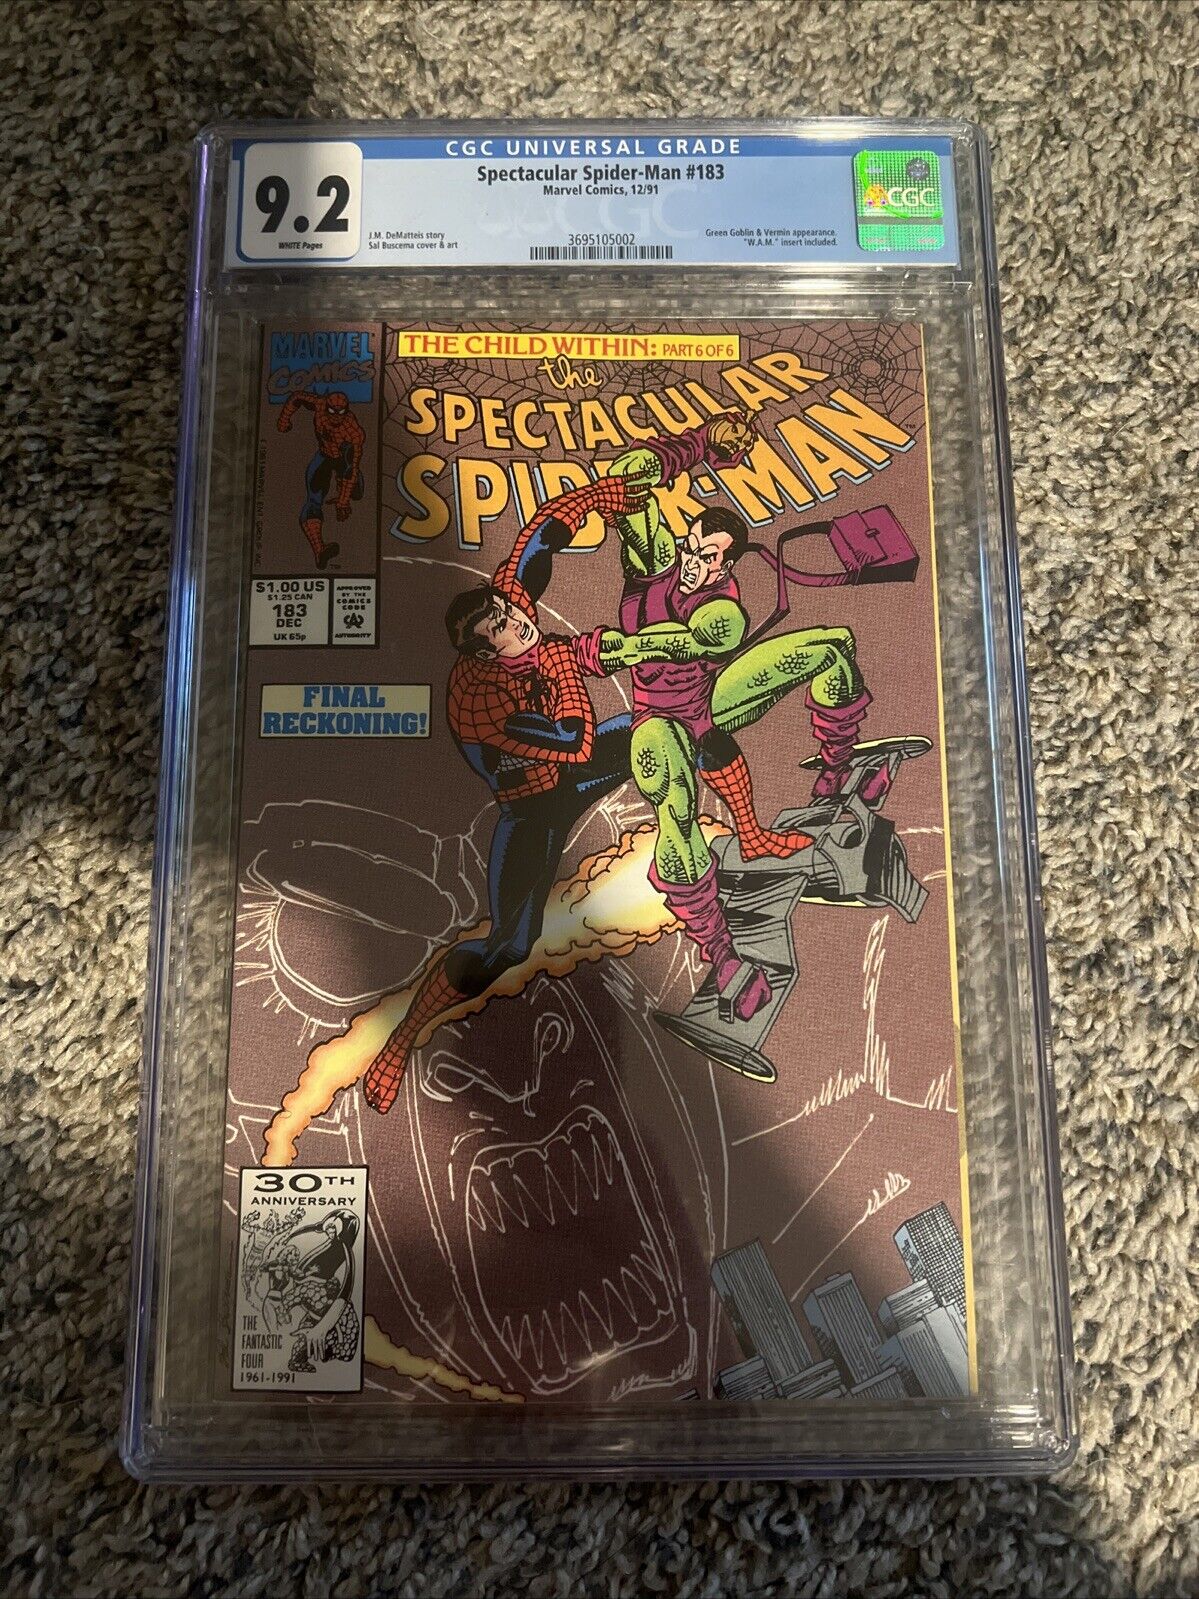 Spectacular Spiderman #183 CGC 9.2